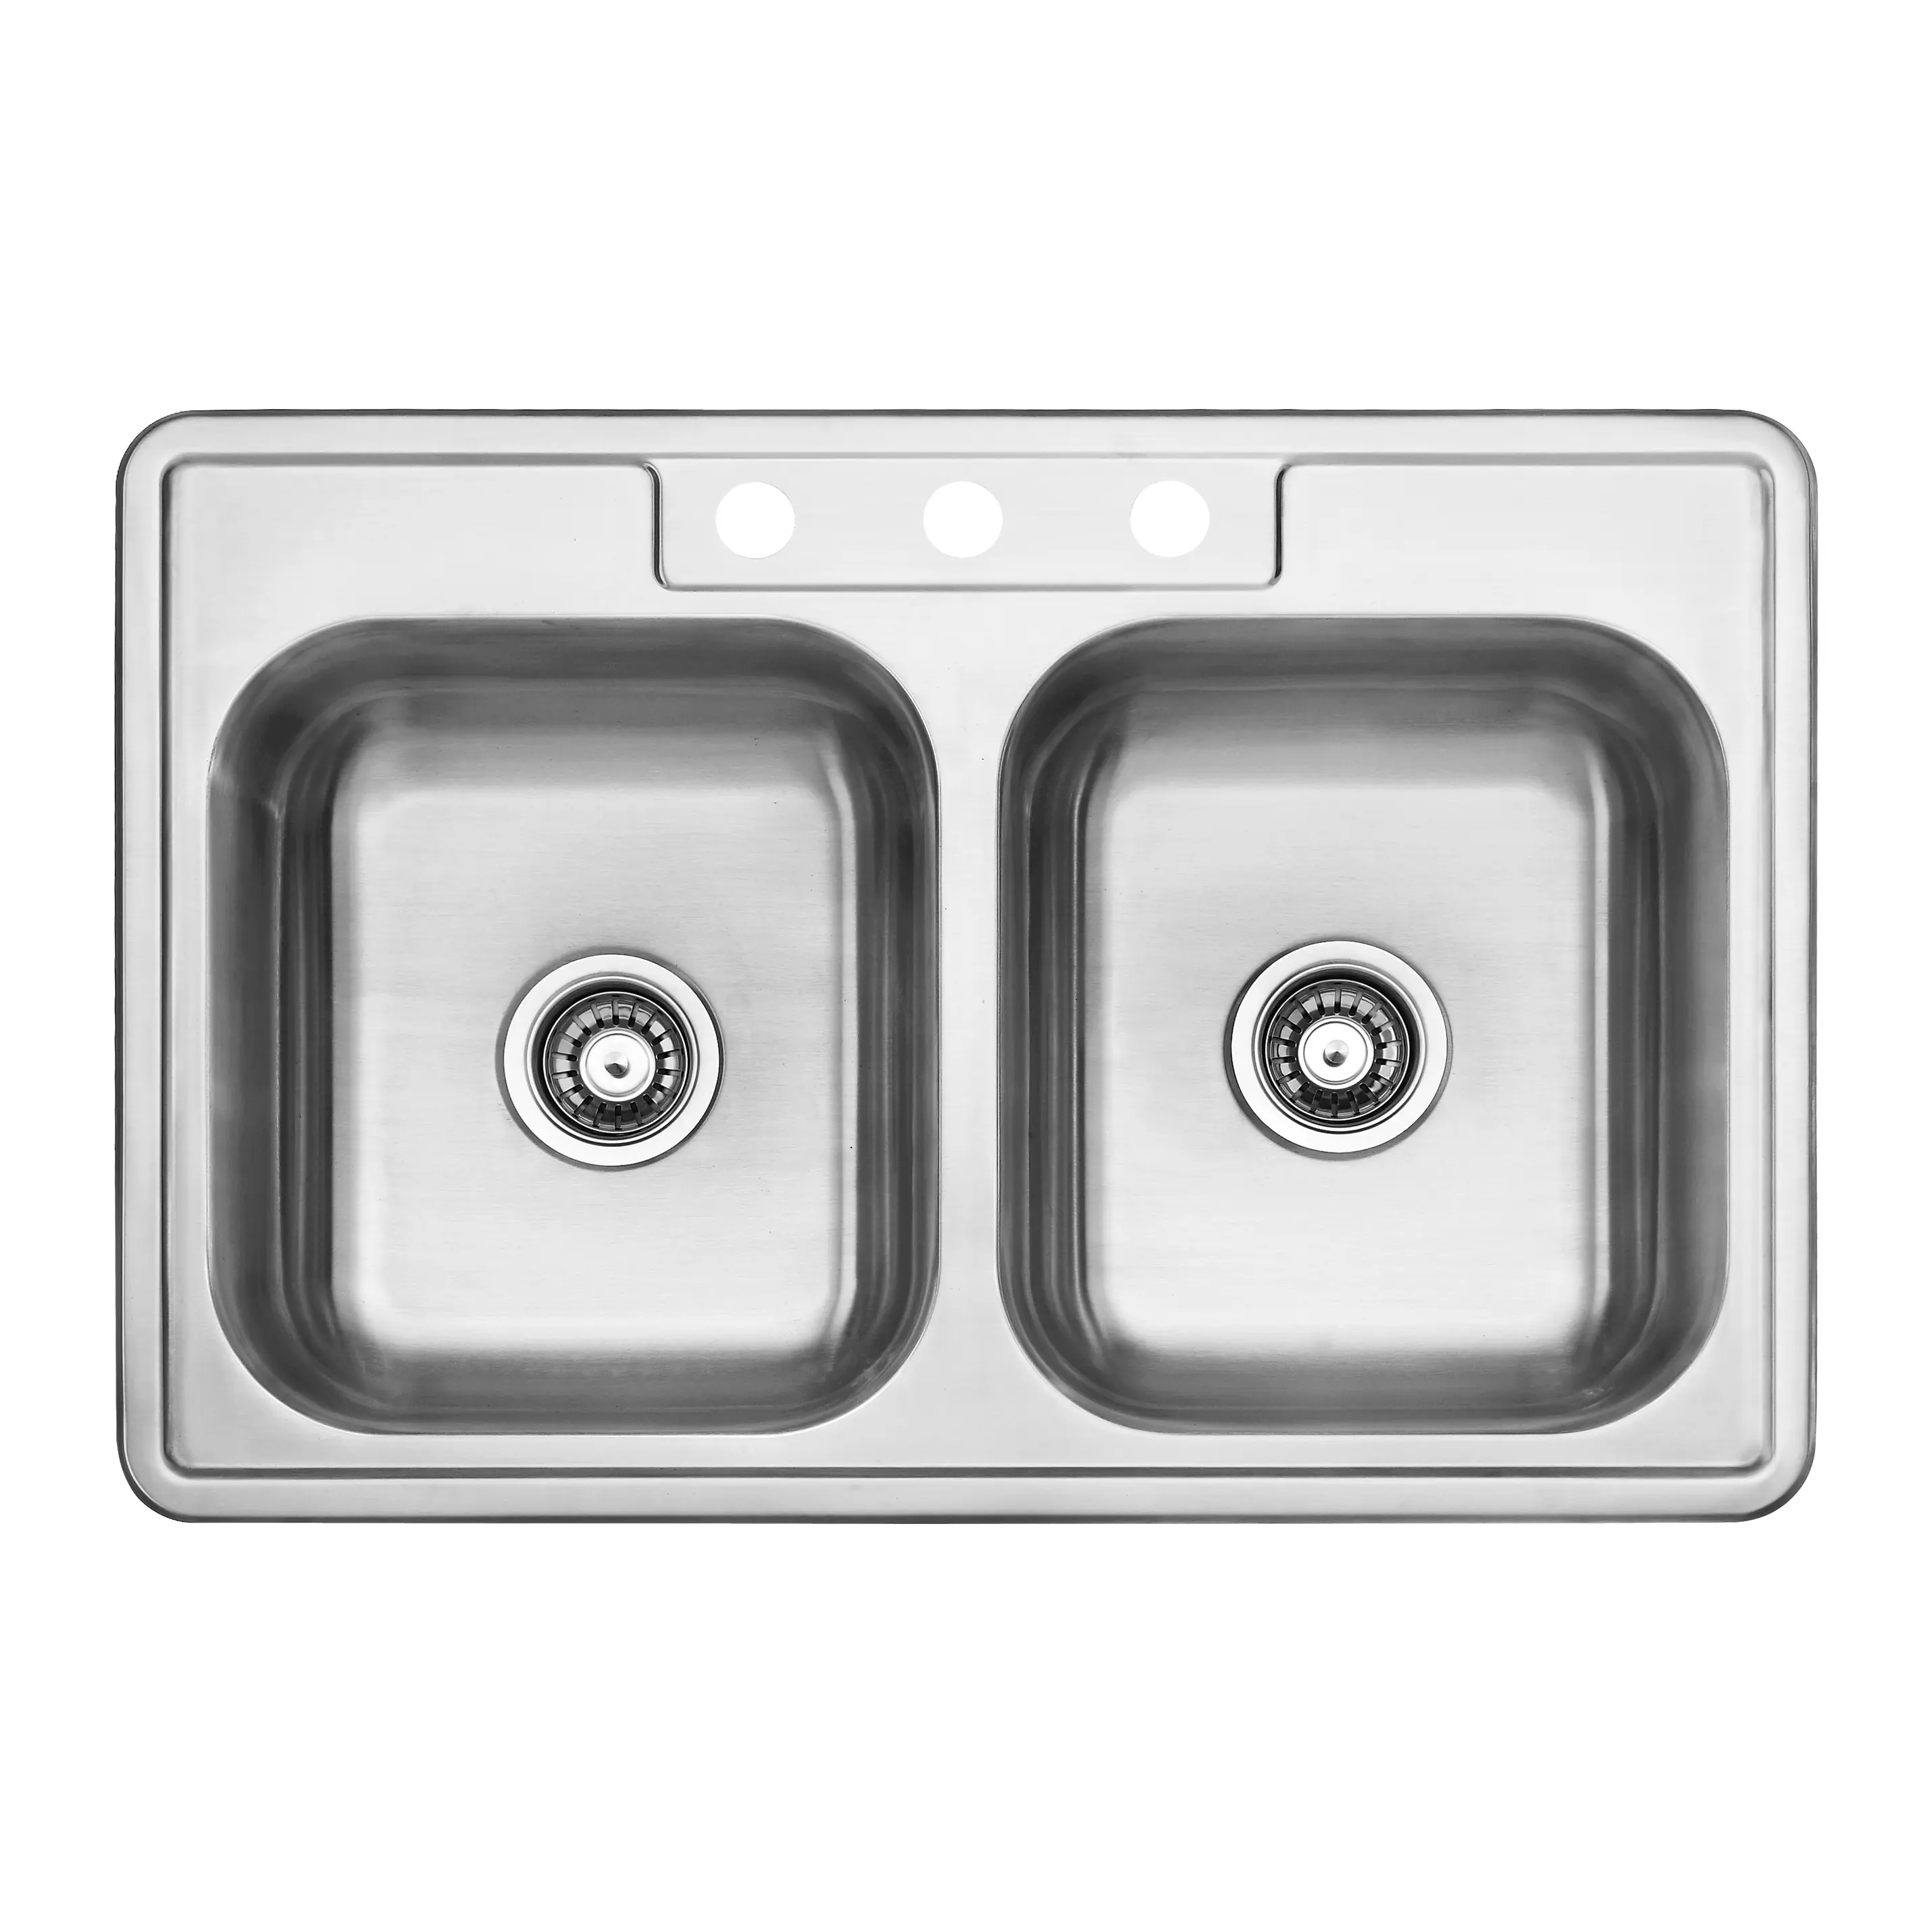 Doppio lavello da cucina rettangolare in acciaio inossidabile con 3 fori sul lato con rubinetto